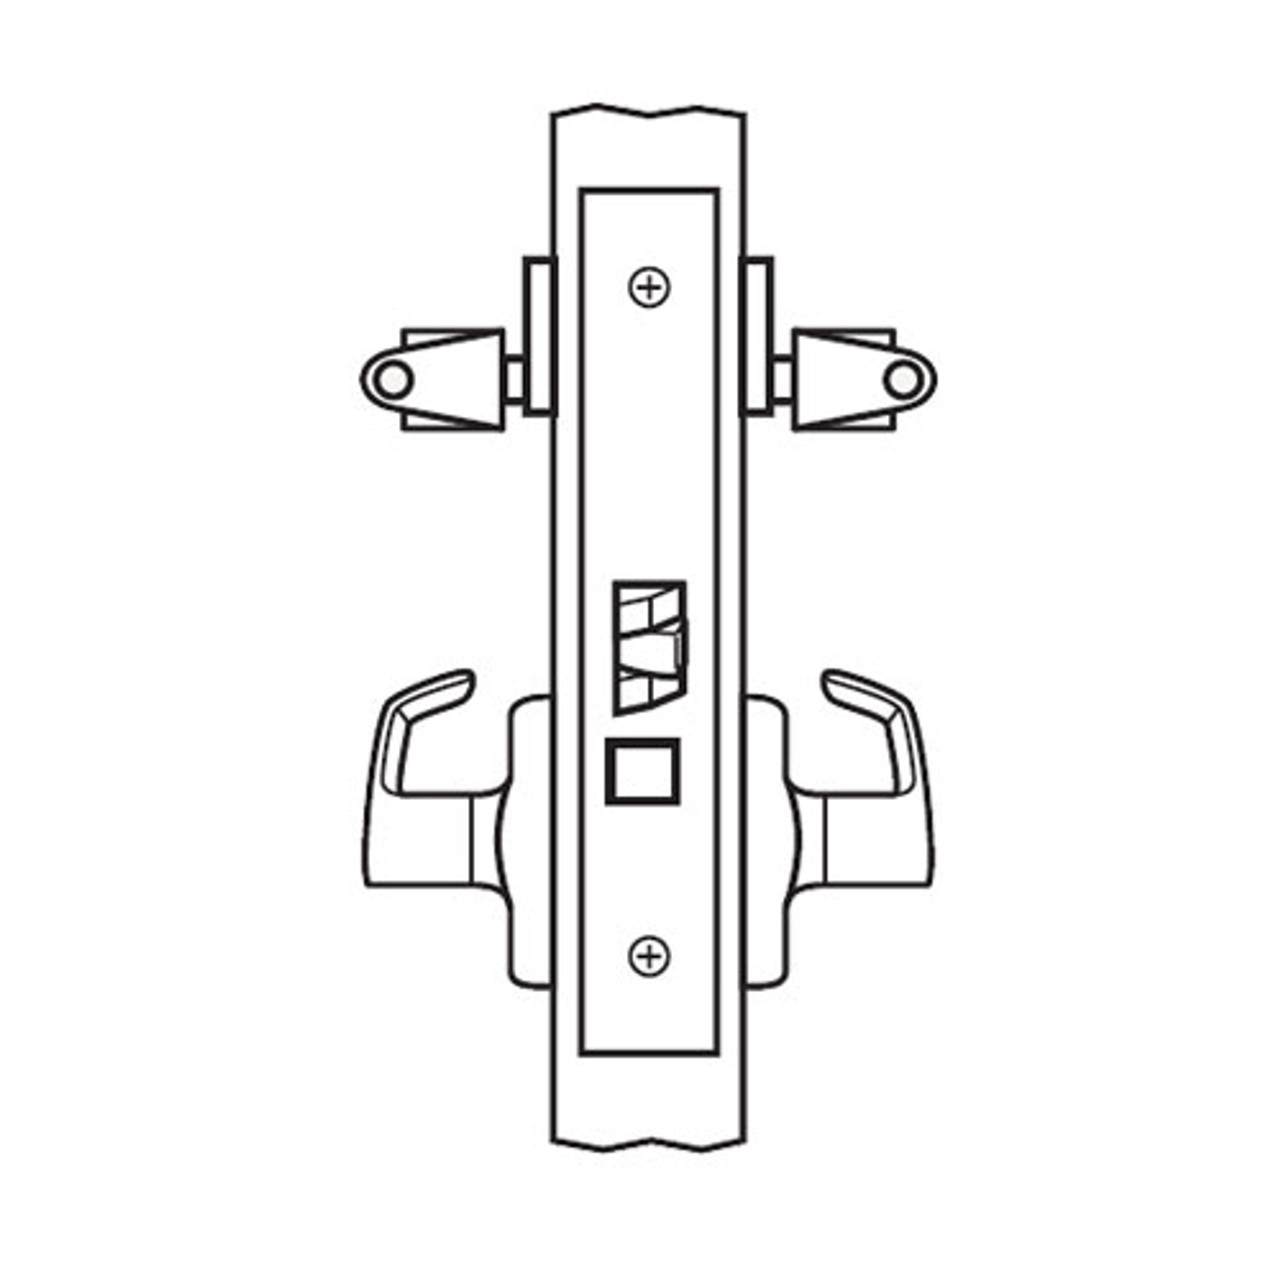 BM32-VH-03 Arrow Mortise Lock BM Series Vestibule Lever with Ventura Design and H Escutcheon in Bright Brass